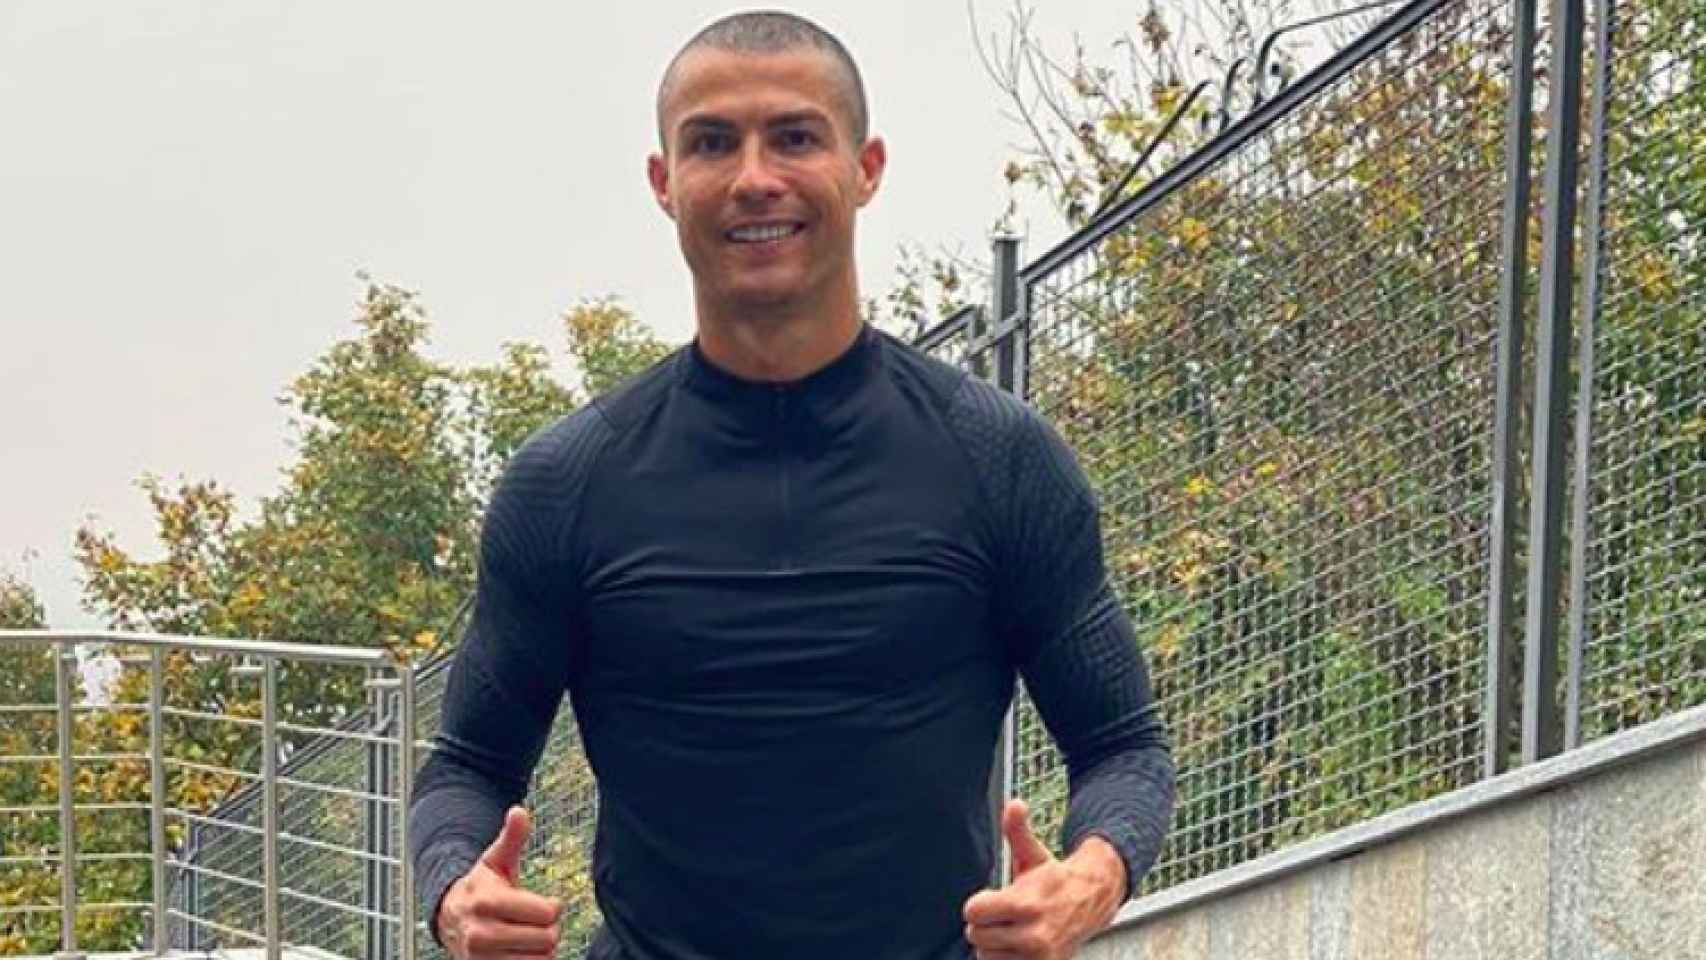 El cambio de look radical de Cristiano Ronaldo